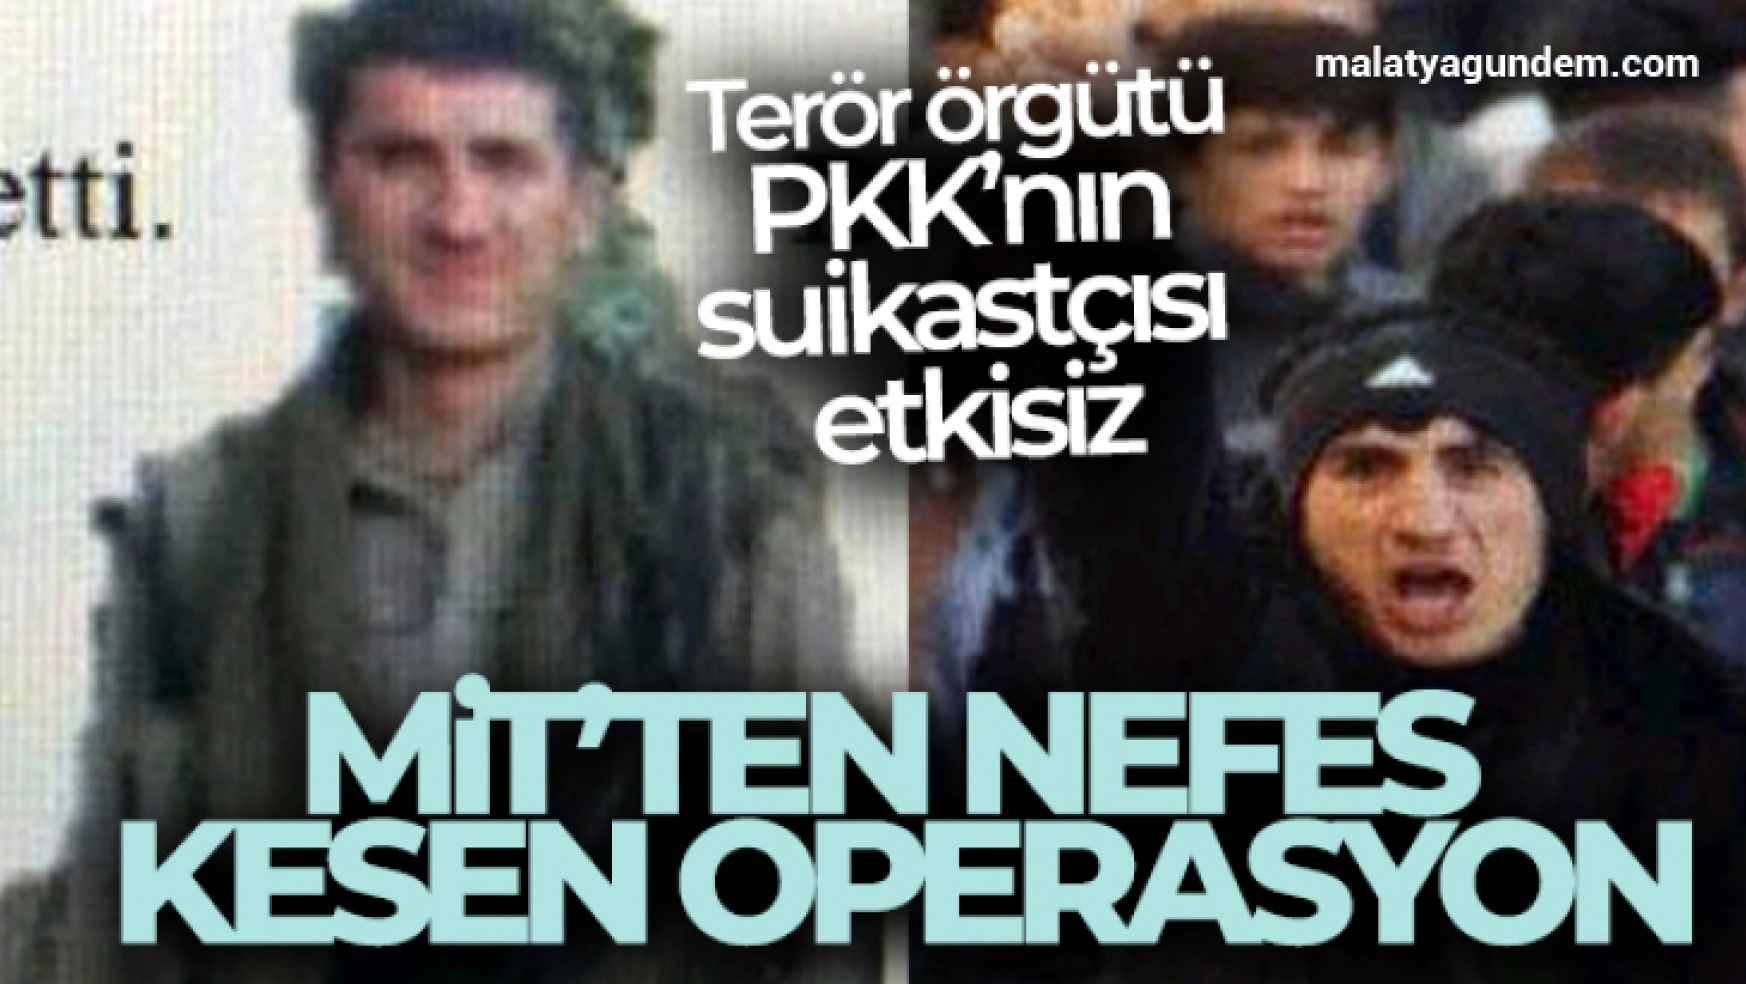 MİT'ten nefes kesen operasyon: 'Terör örgütü PKK'nın suikastçısı etkisiz'